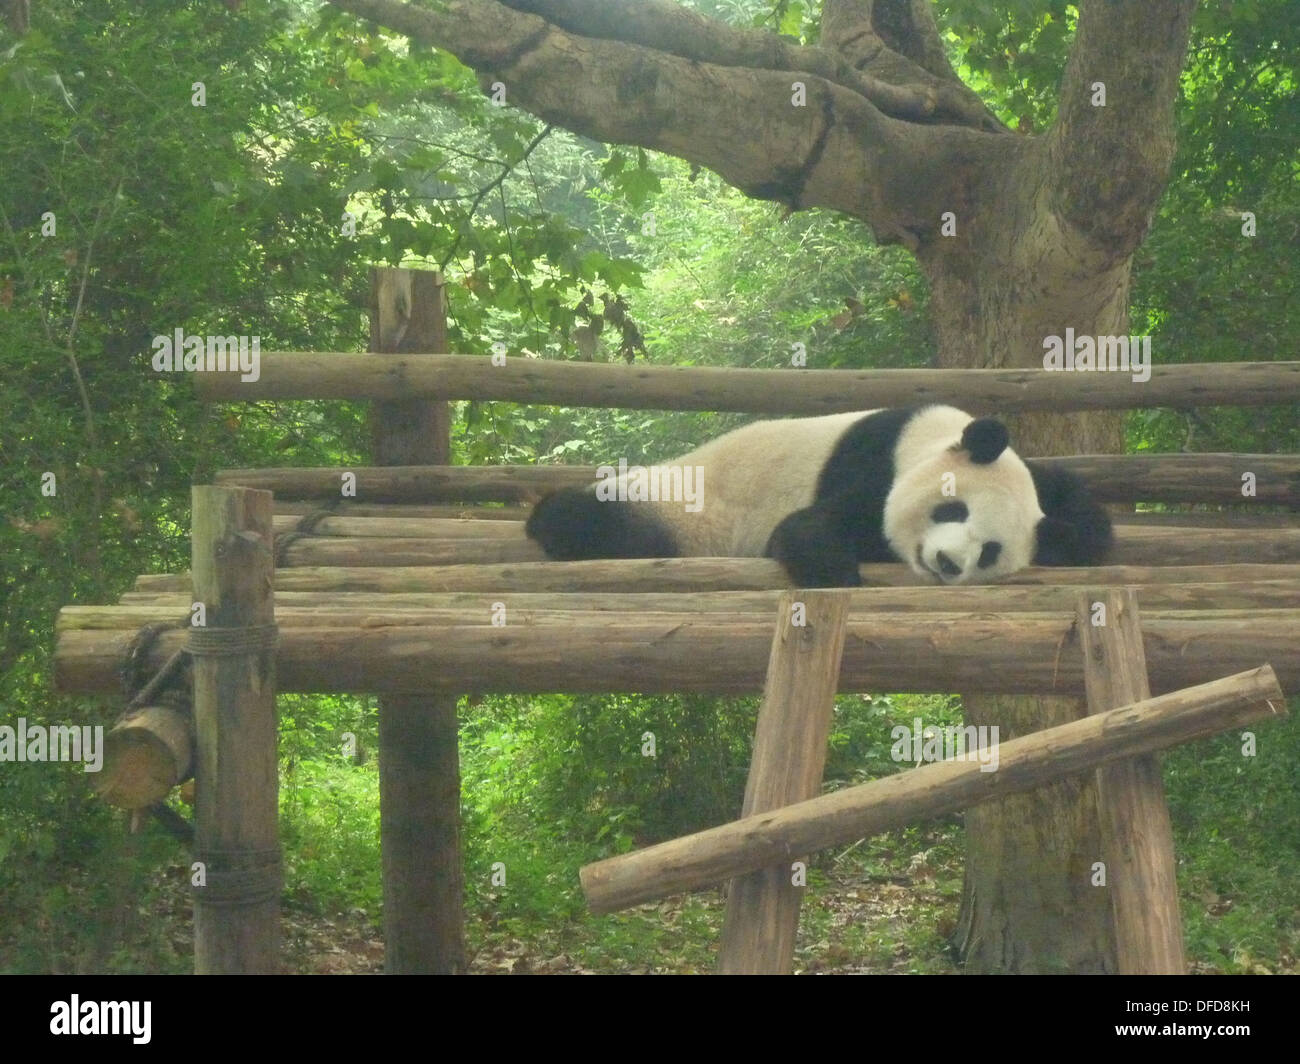 Panda gigante a Chengdu Panda Base, nella provincia di Sichuan, in Cina Foto Stock